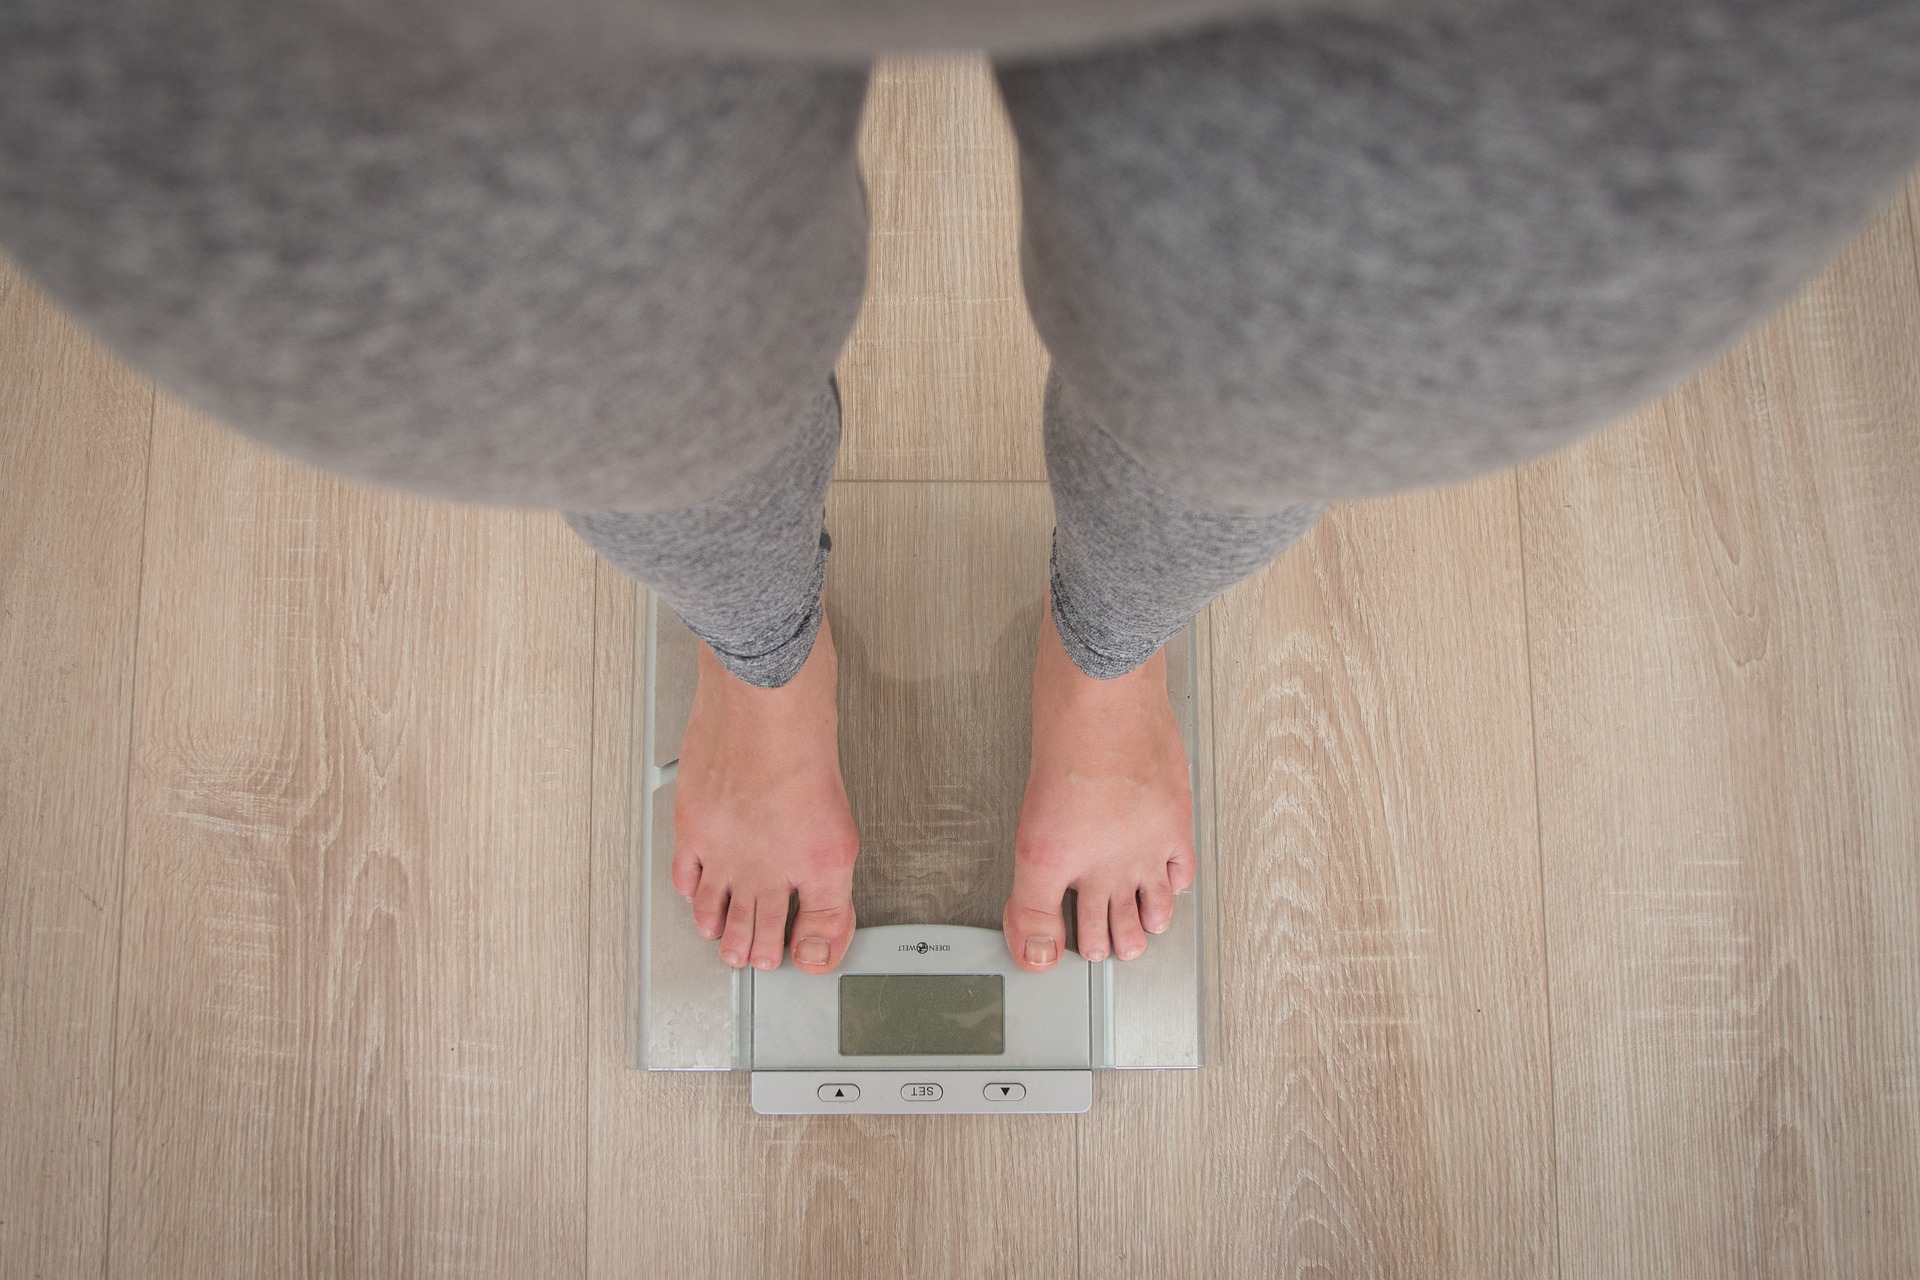 Váha po zhubnutí – jak si ji udržet a nehladovět?